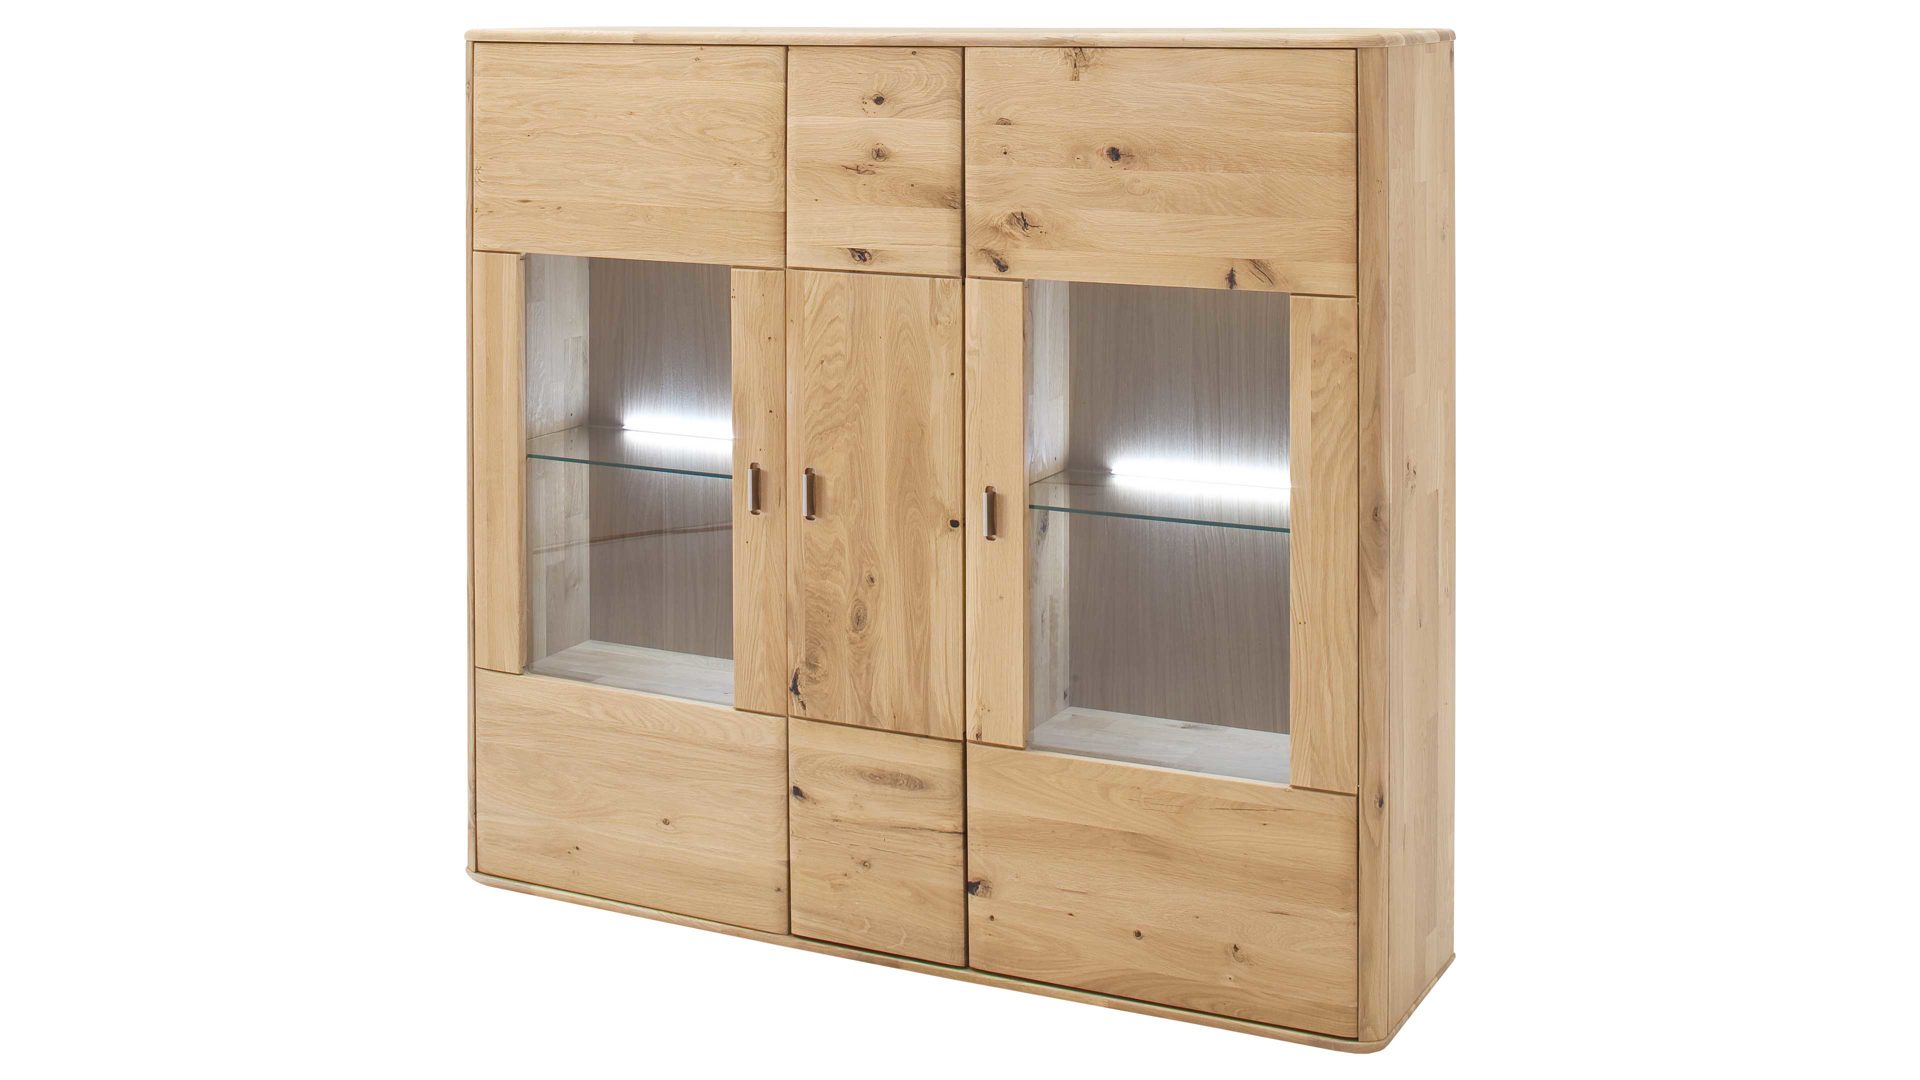 Highboard Mca furniture aus Holz in Holzfarben Highboard Ravello biancofarbene Balkeneiche – drei Türen